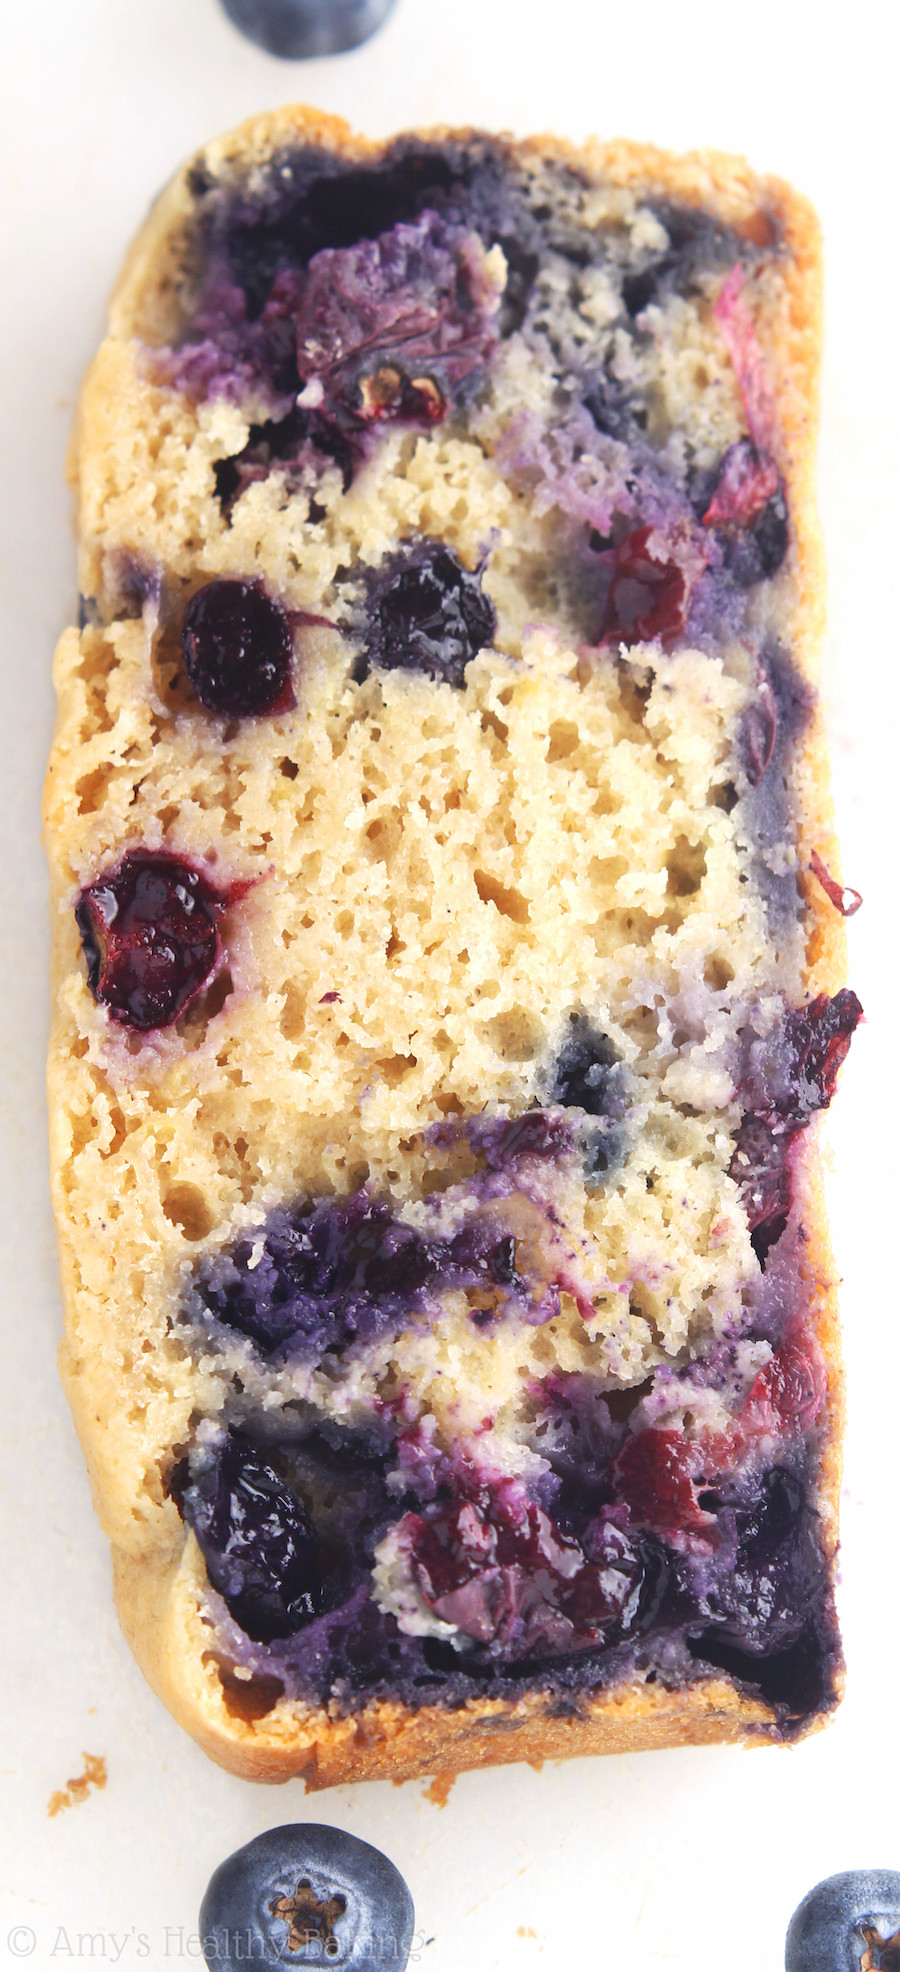 Healthy Blueberry Breakfast Recipes
 breakfast loaf recipe healthy